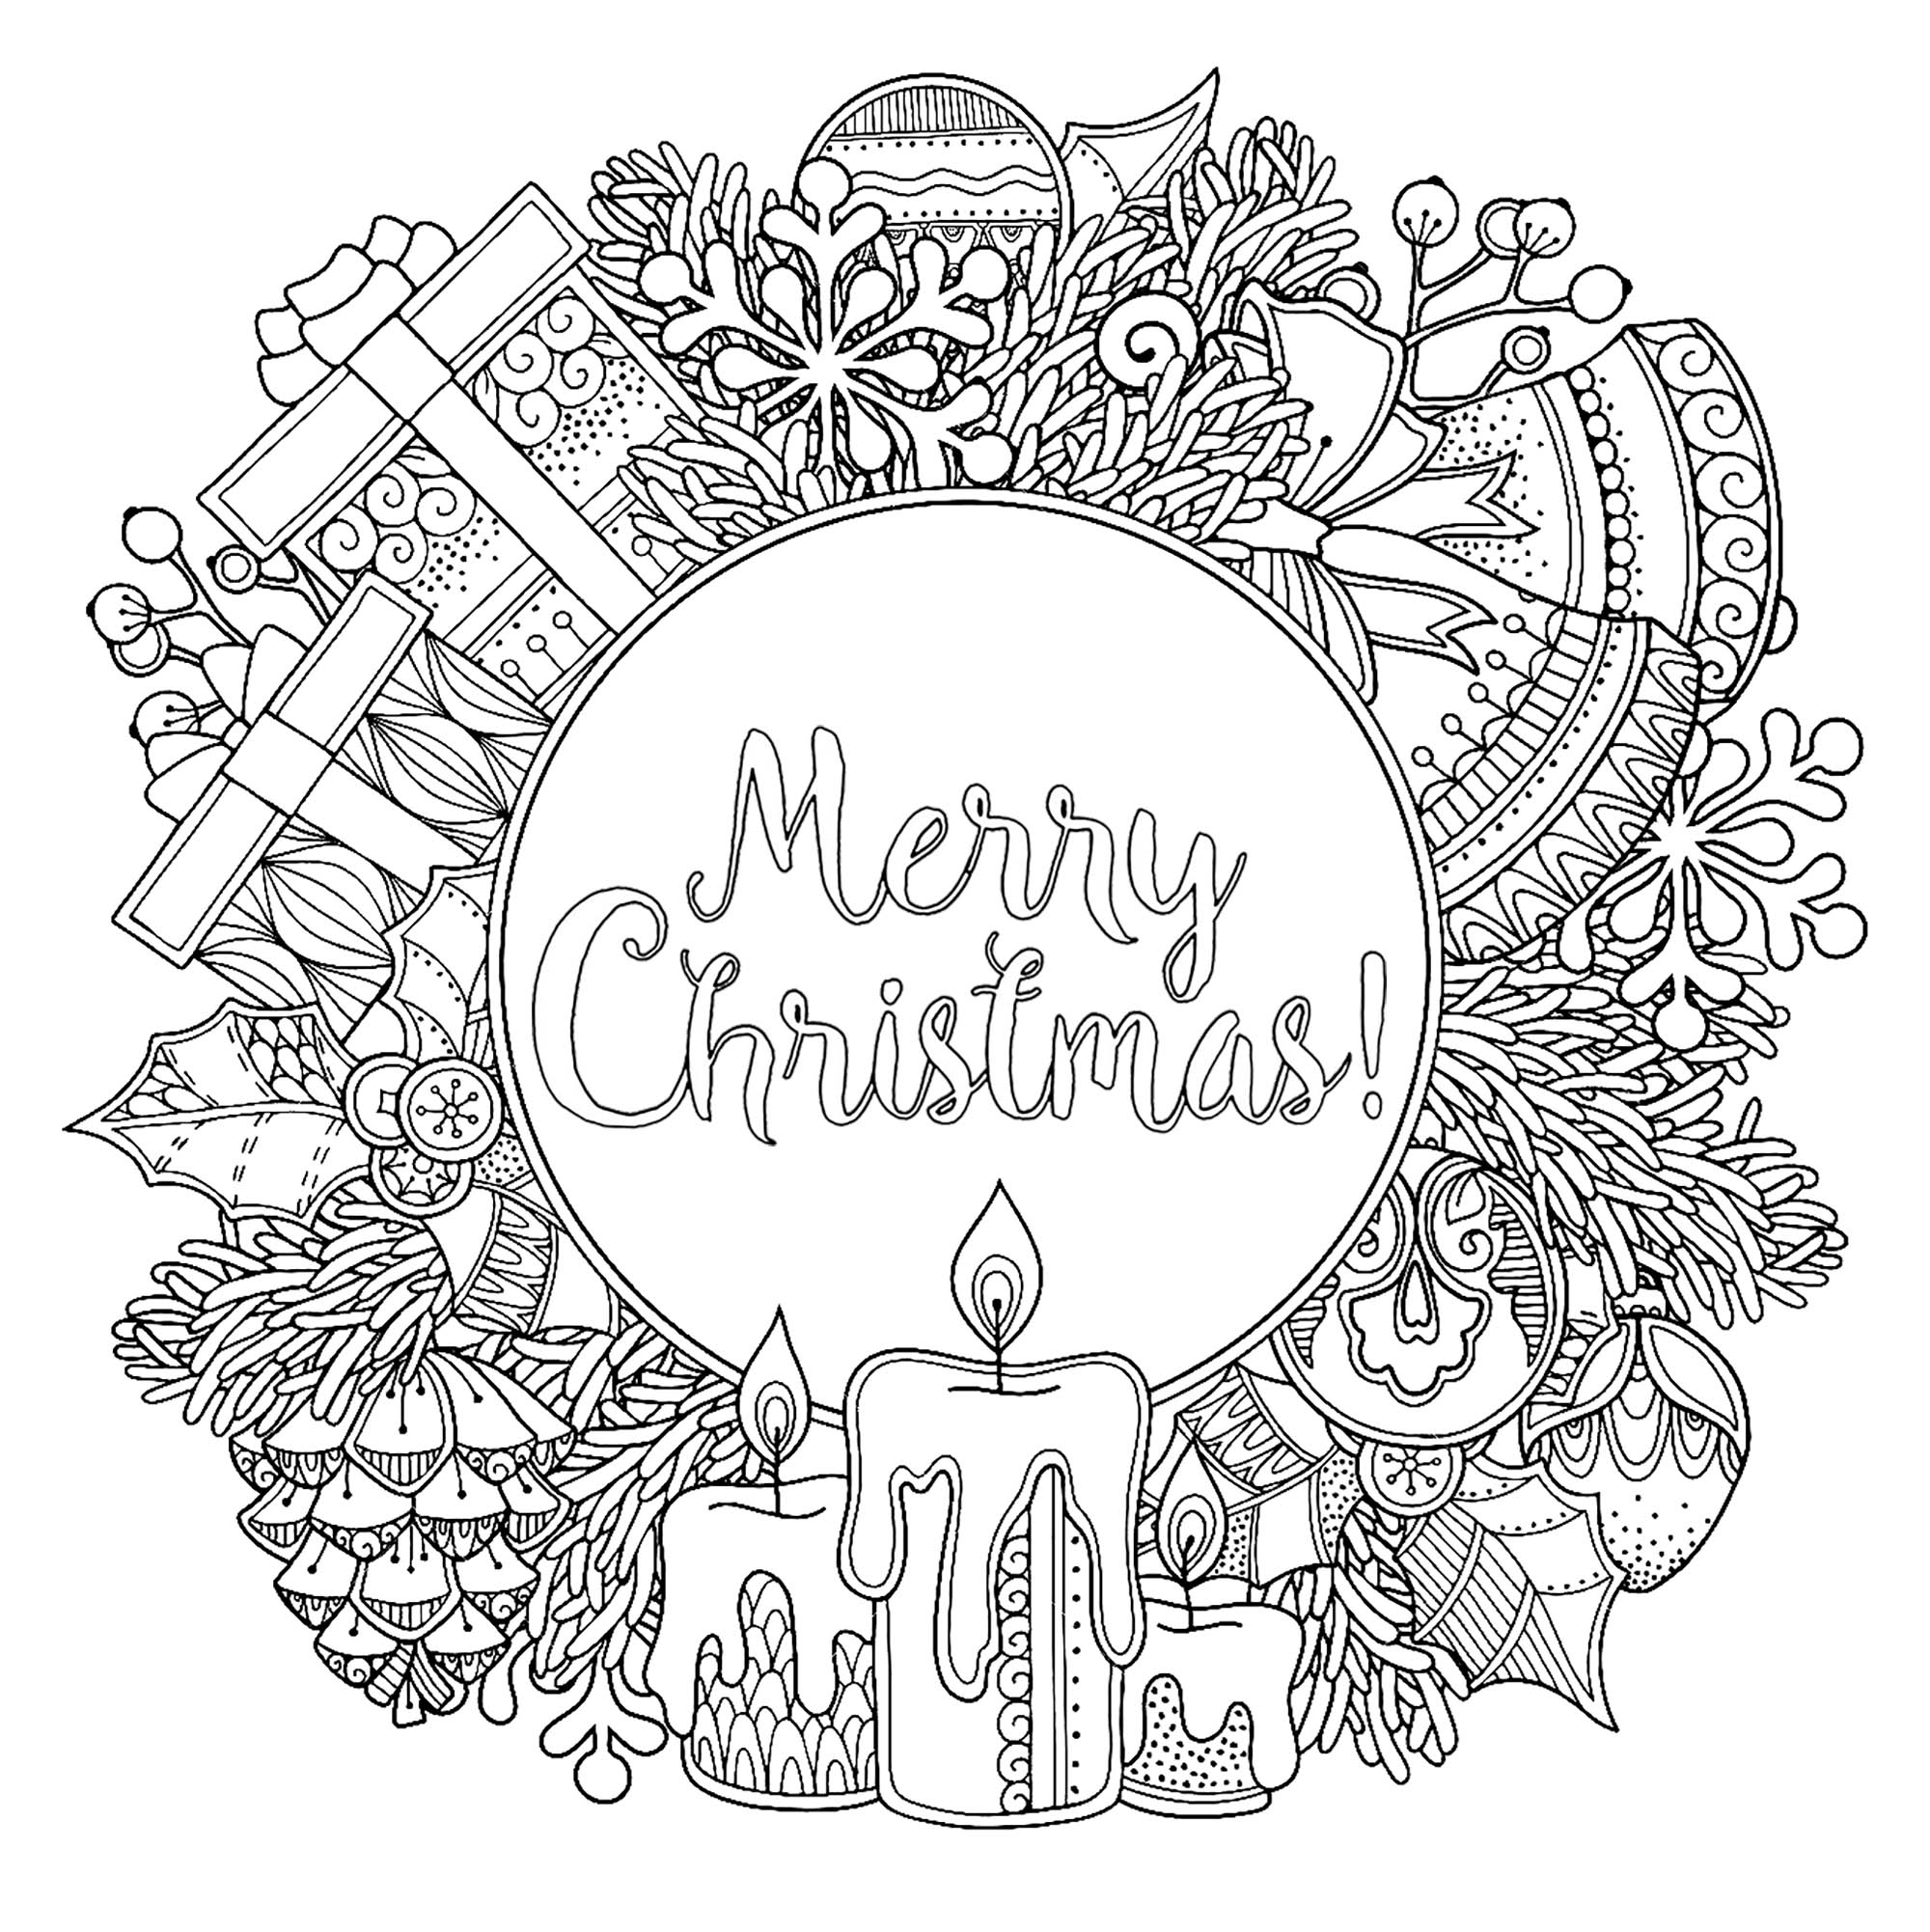 Moldura redonda de Natal em estilo doodle, com o texto 'Feliz Natal' no meio. Velas, presentes, maçãs de pinheiro, sinos ... Vários símbolos de Natal famosos estão aqui, Fonte : 123rf   Artista : Olga Kostenko